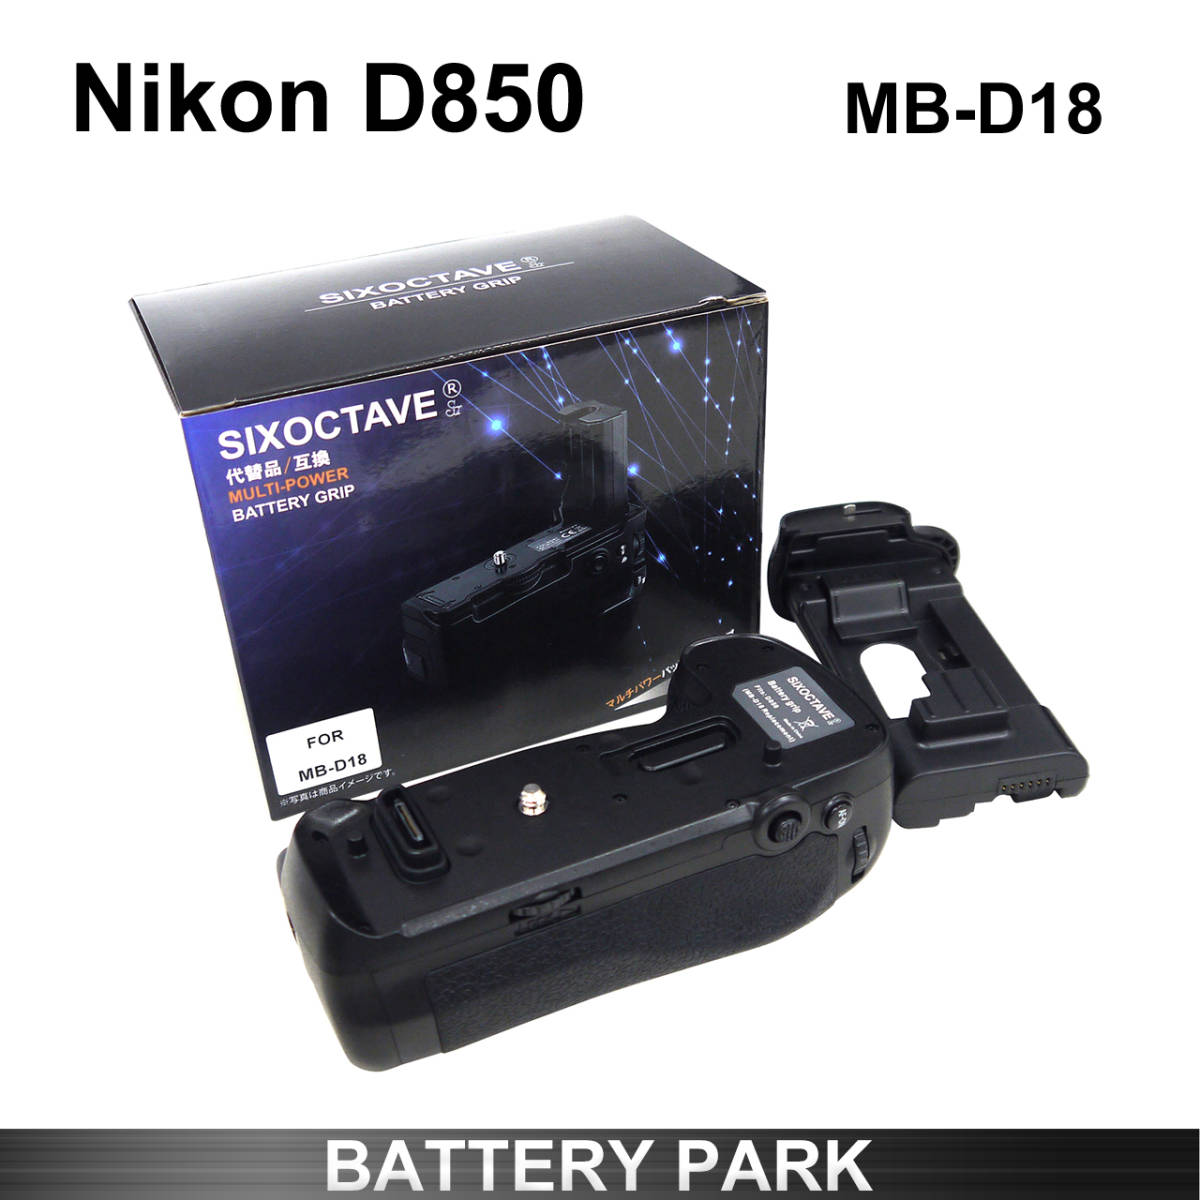 【数量は多】 マルチパワーバッテリーパック MB-D18 用 D850 Nikon 送料無料 EN-EL15a 安定した縦位置で撮影も可能 EN-EL15 EN-EL15b ニコン